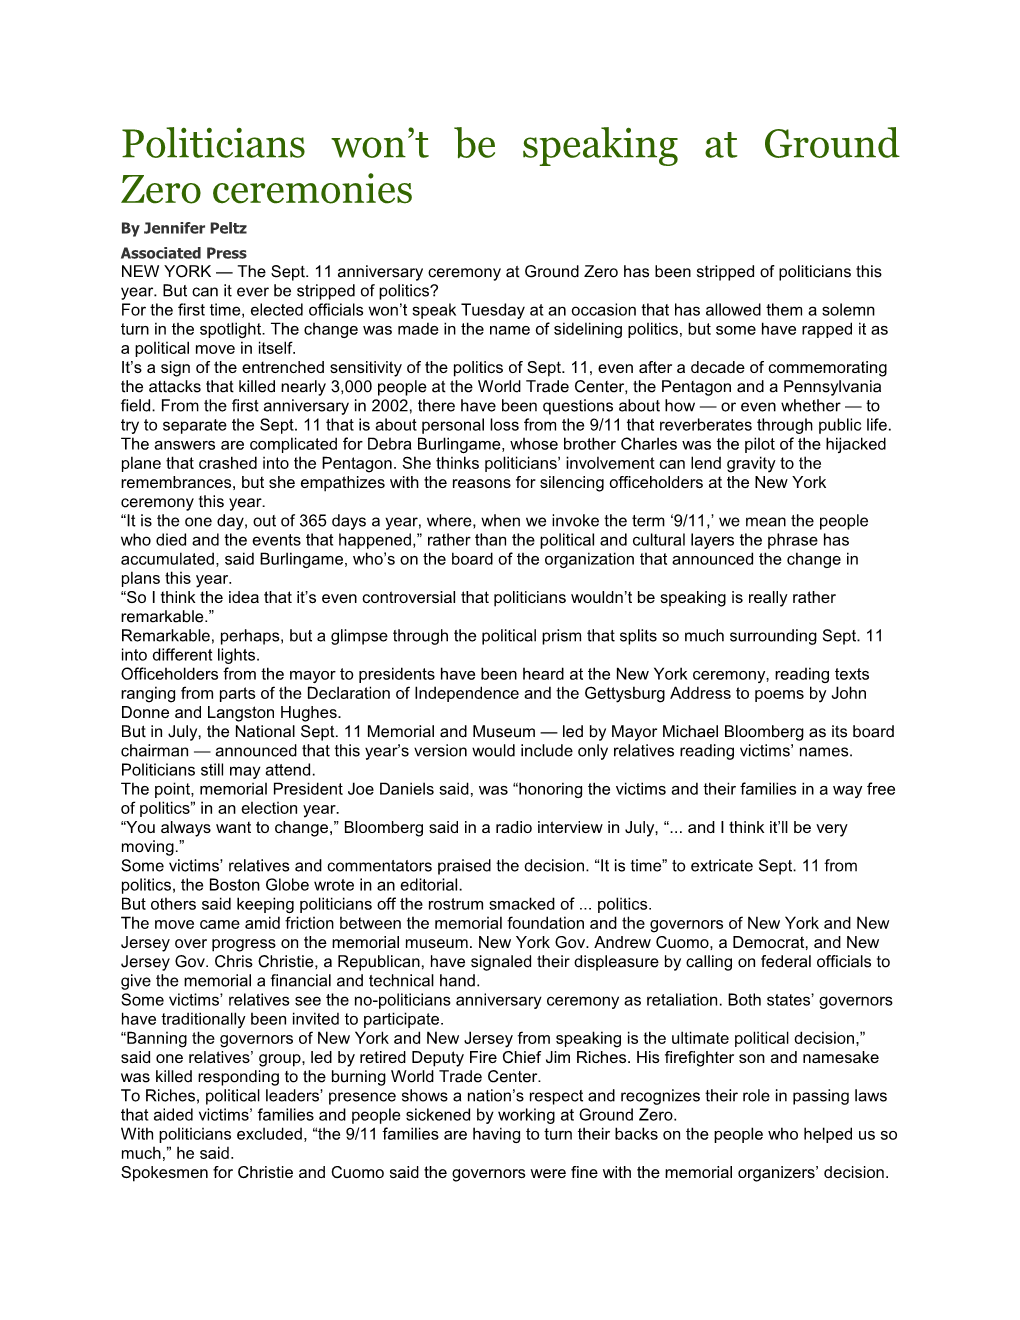 Politicians Won T Be Speaking at Ground Zero Ceremonies